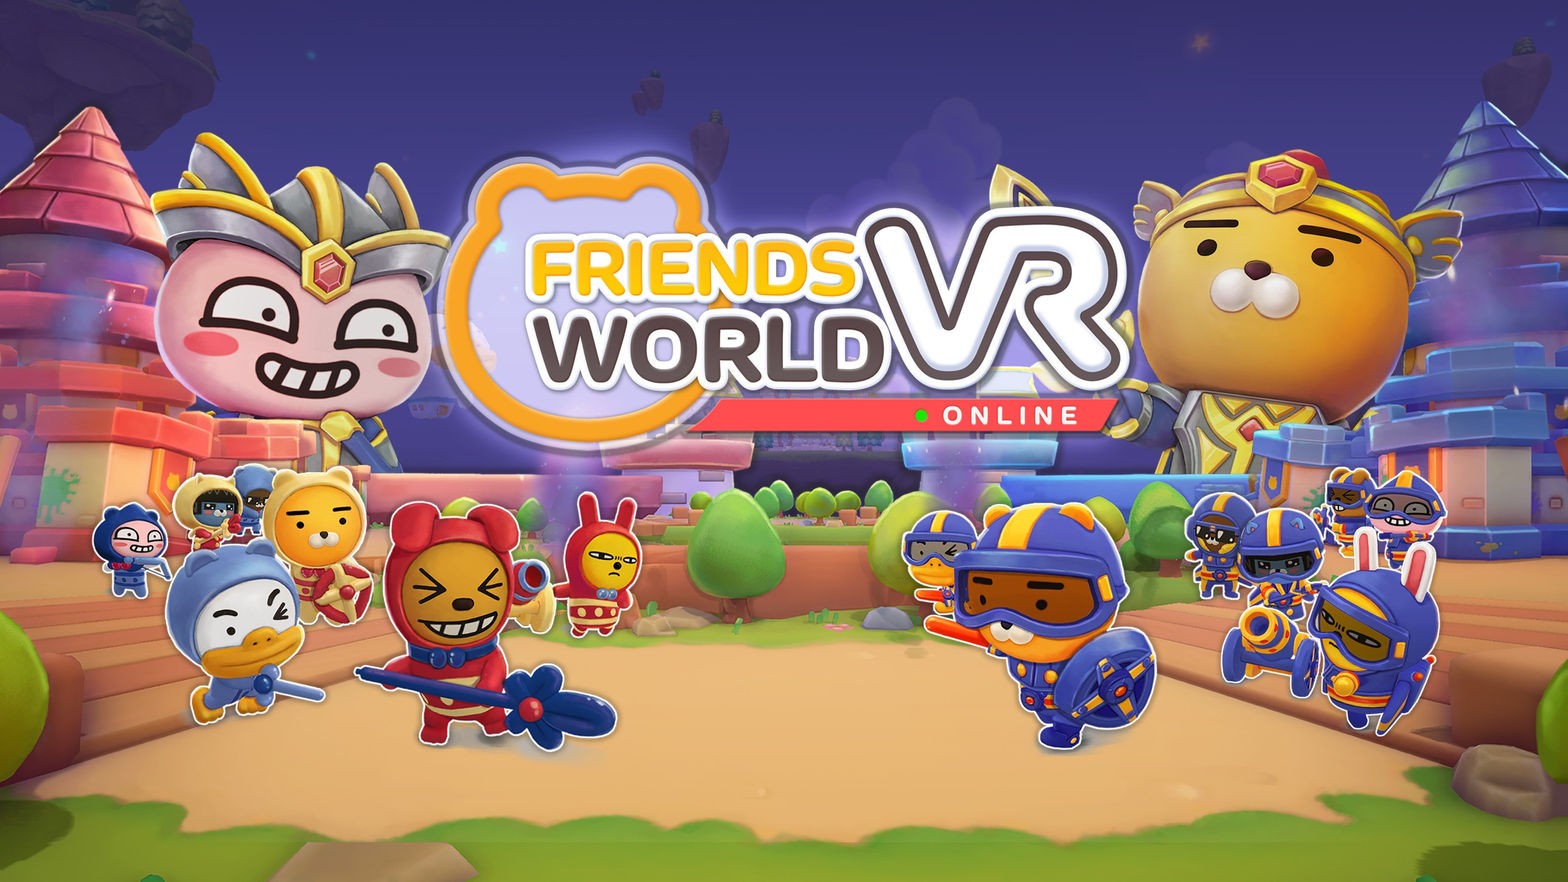 Friends VR World Online -Beta